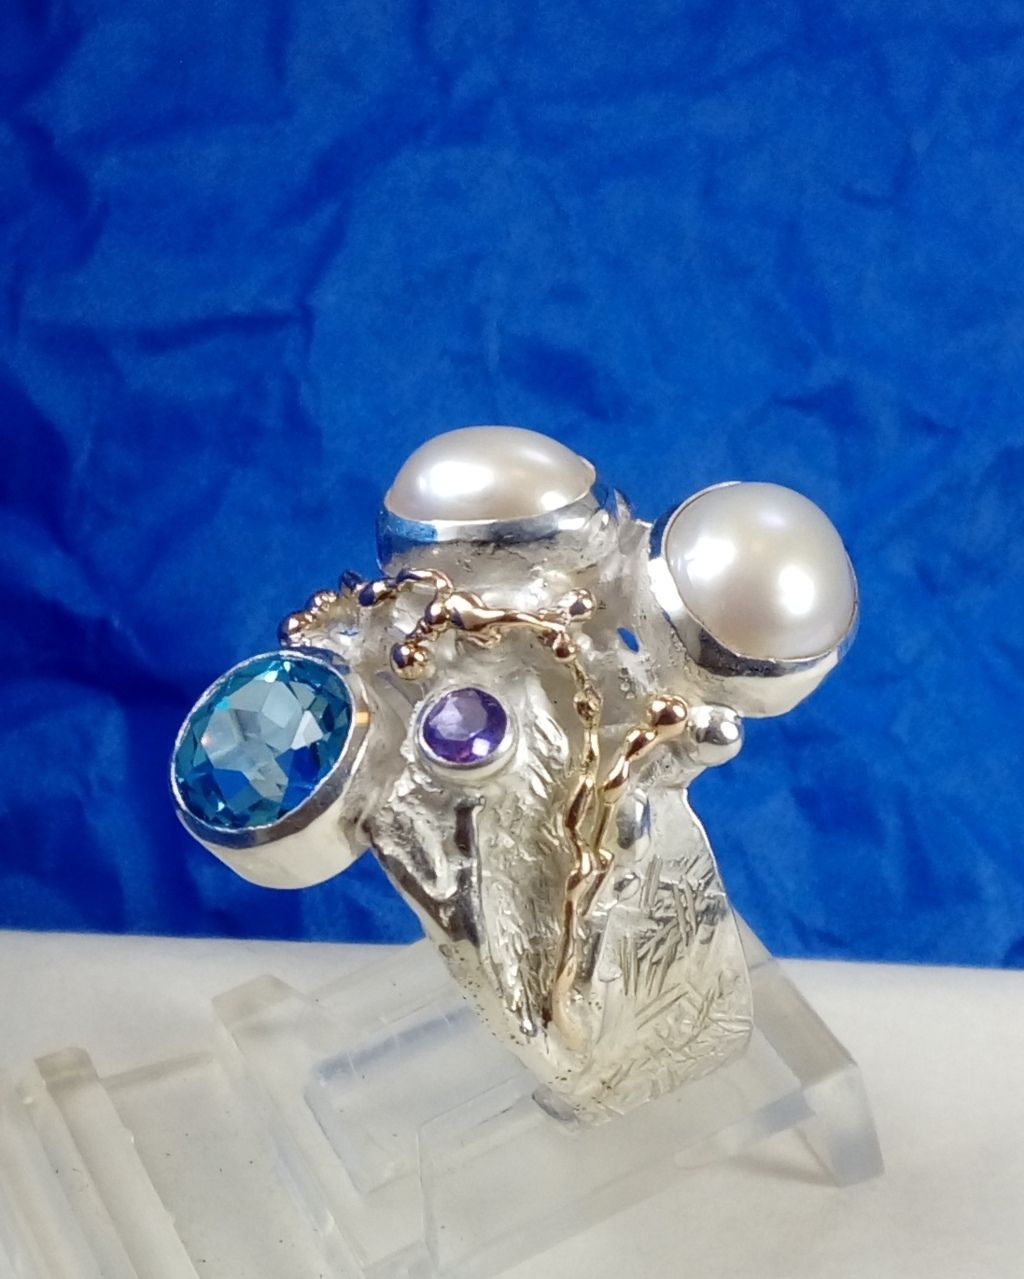 Gregory Pyra Piro ručně vyrobený prsten 7320, šperky prodávané v galeriích, prsten s jantarem a ametystem, prsten s ametystem a perlou, prsten s perlou a modrým topazem